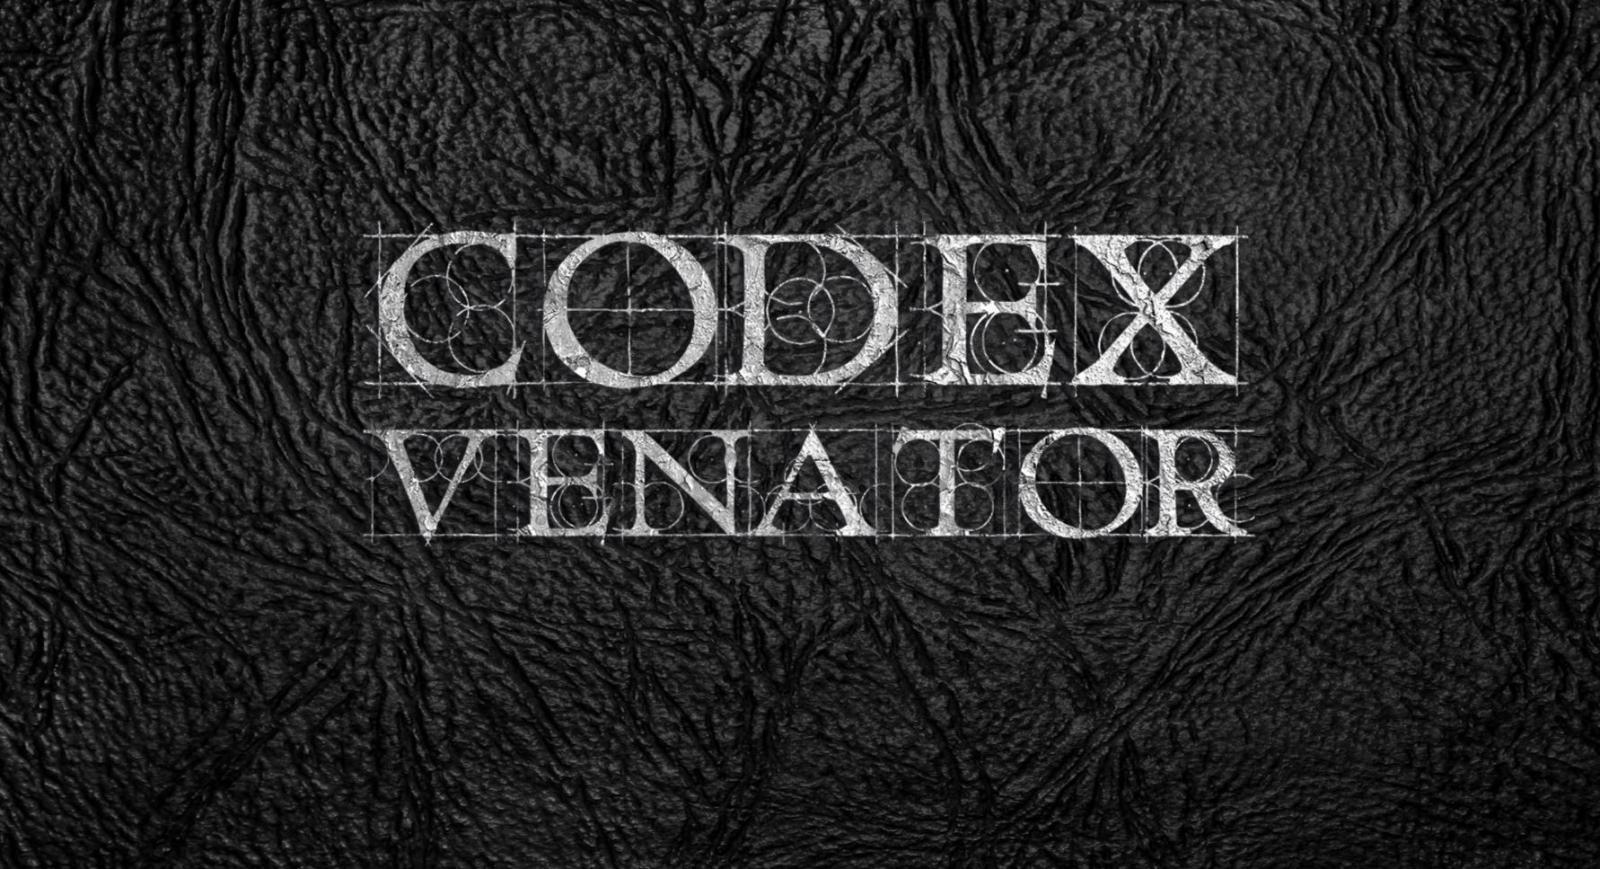 Maggiori informazioni riguardo "Il Codice della Caccia - Codex Venator"